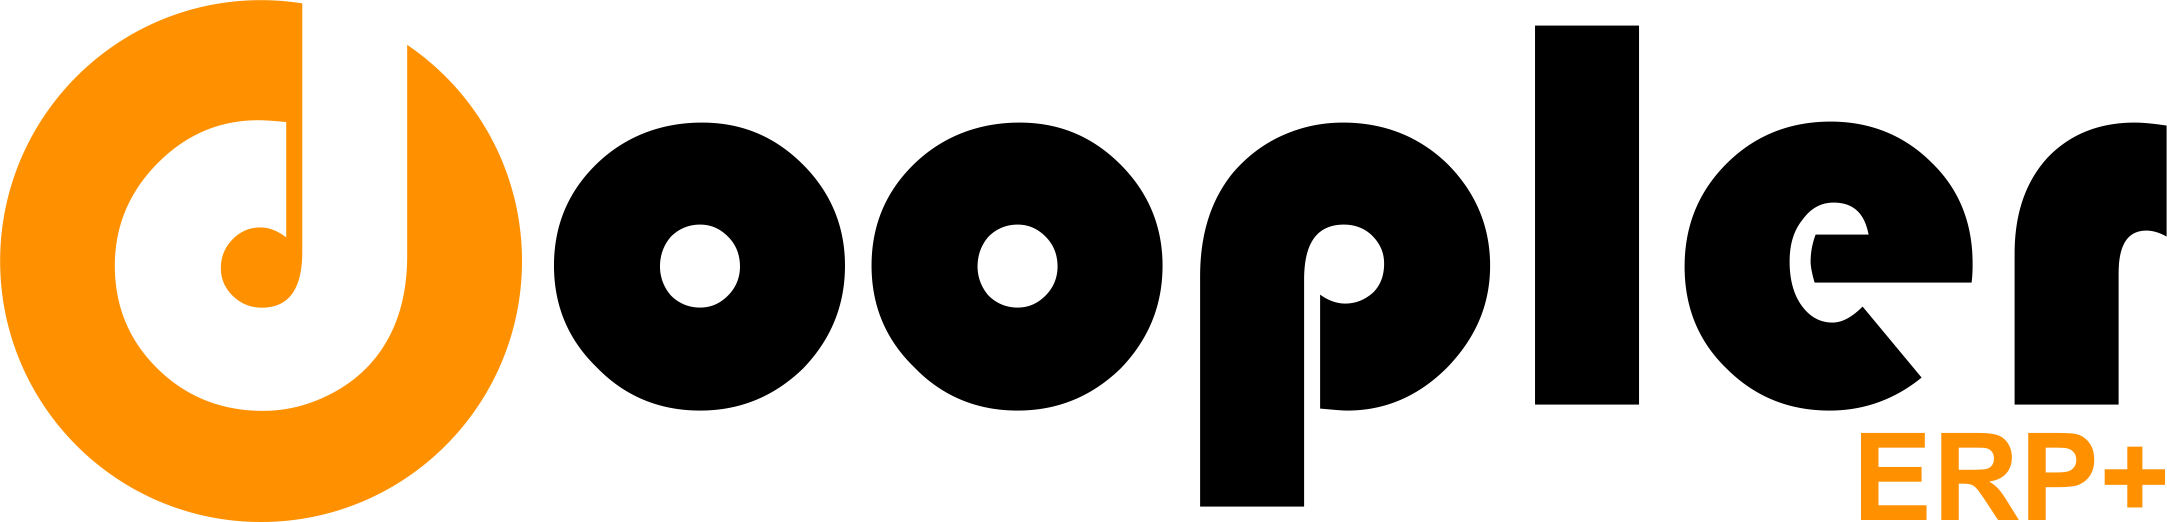 logo doopler erp+